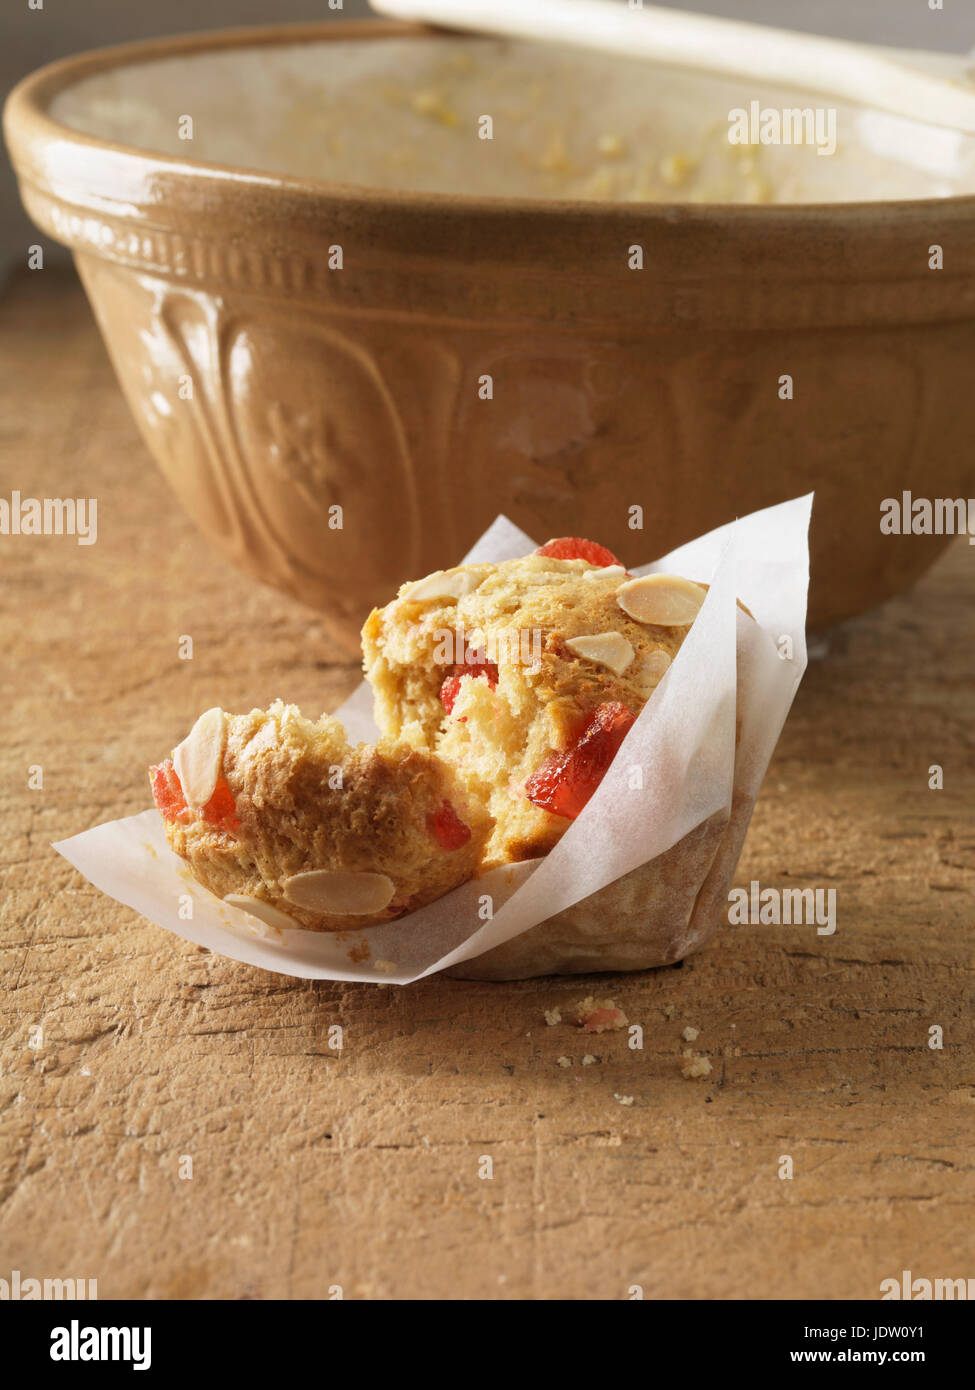 Broken cherry almond muffin Stock Photo